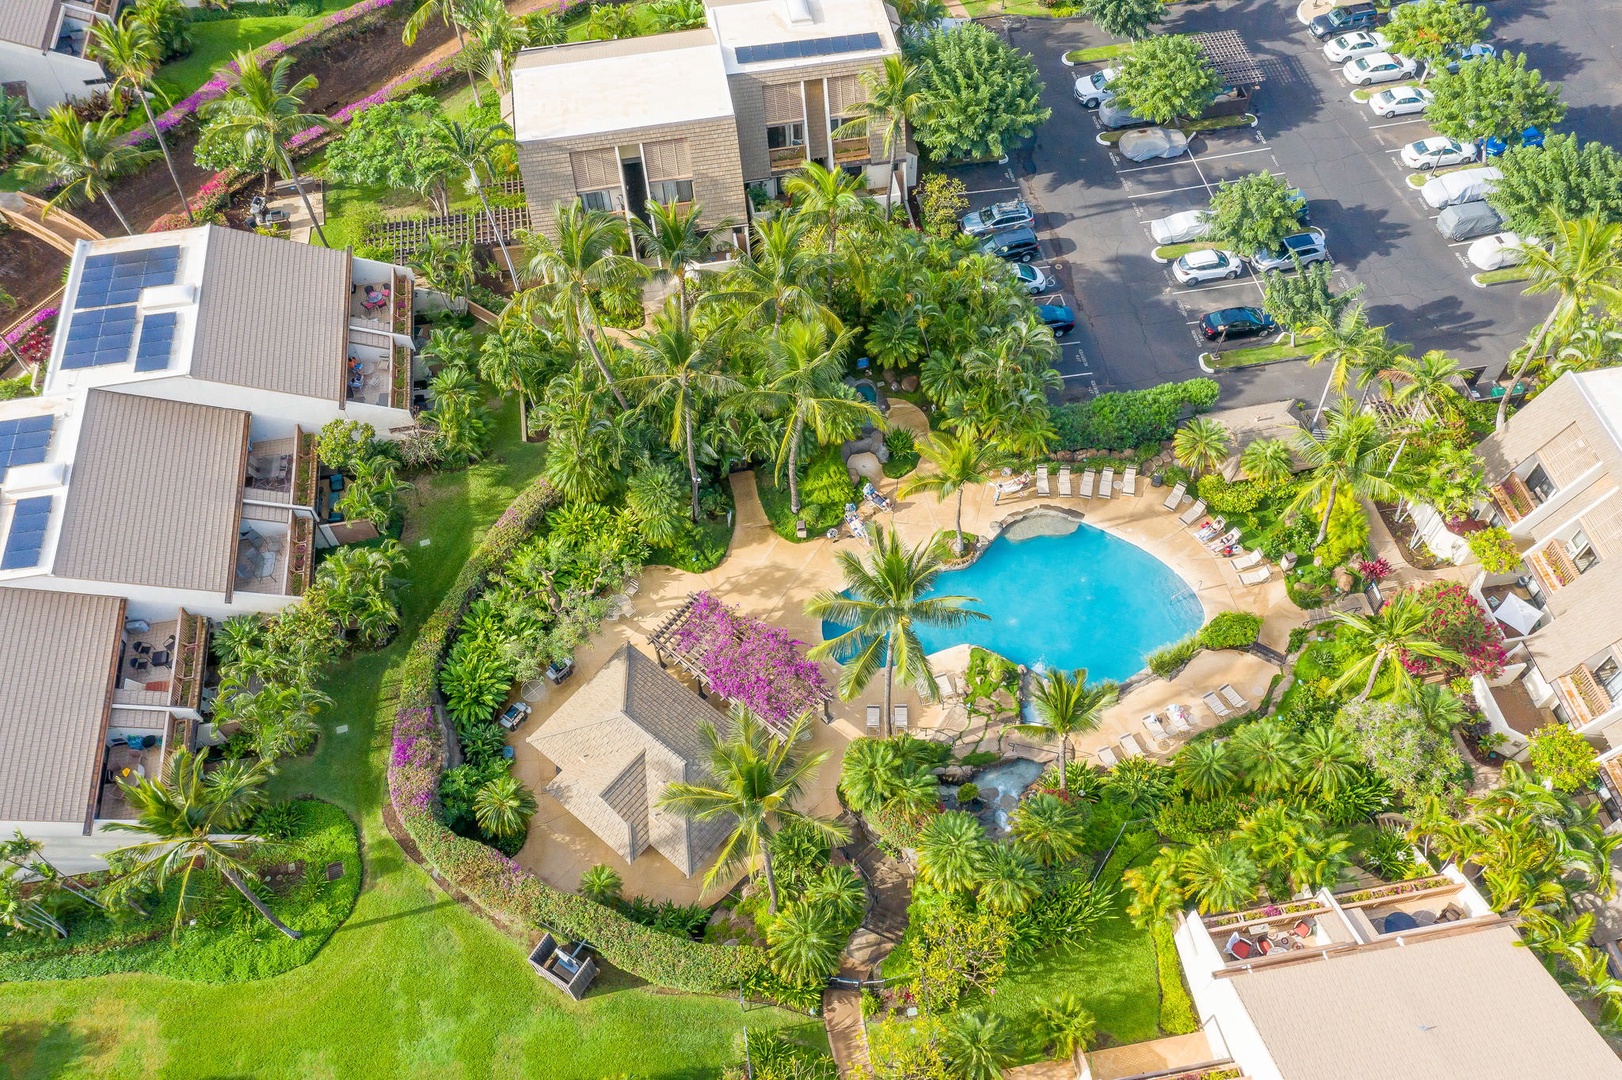 Enjoy the Maui Kamaole resort amenities